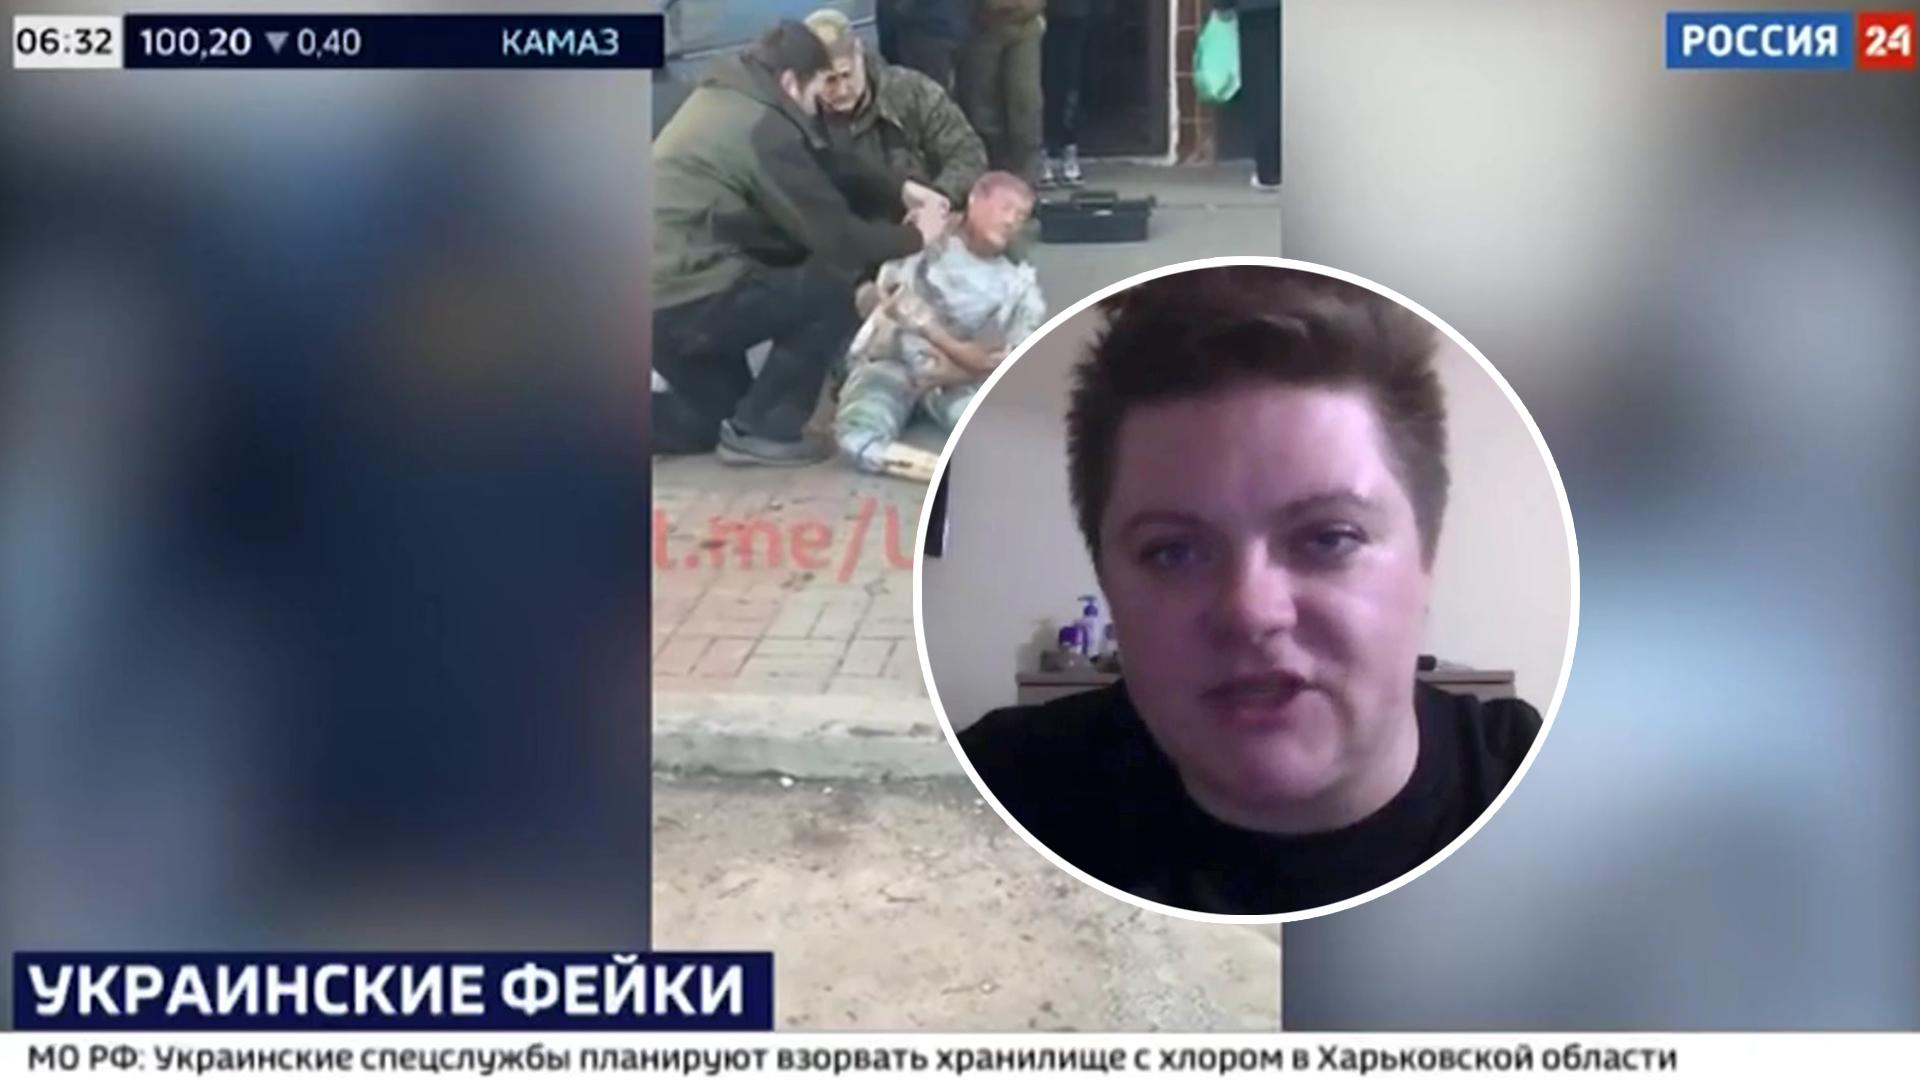 Regieassistentin entlarvt russisches Propaganda-Video Putins Staats-TV unterstellt Ukraine Leiche-Fake